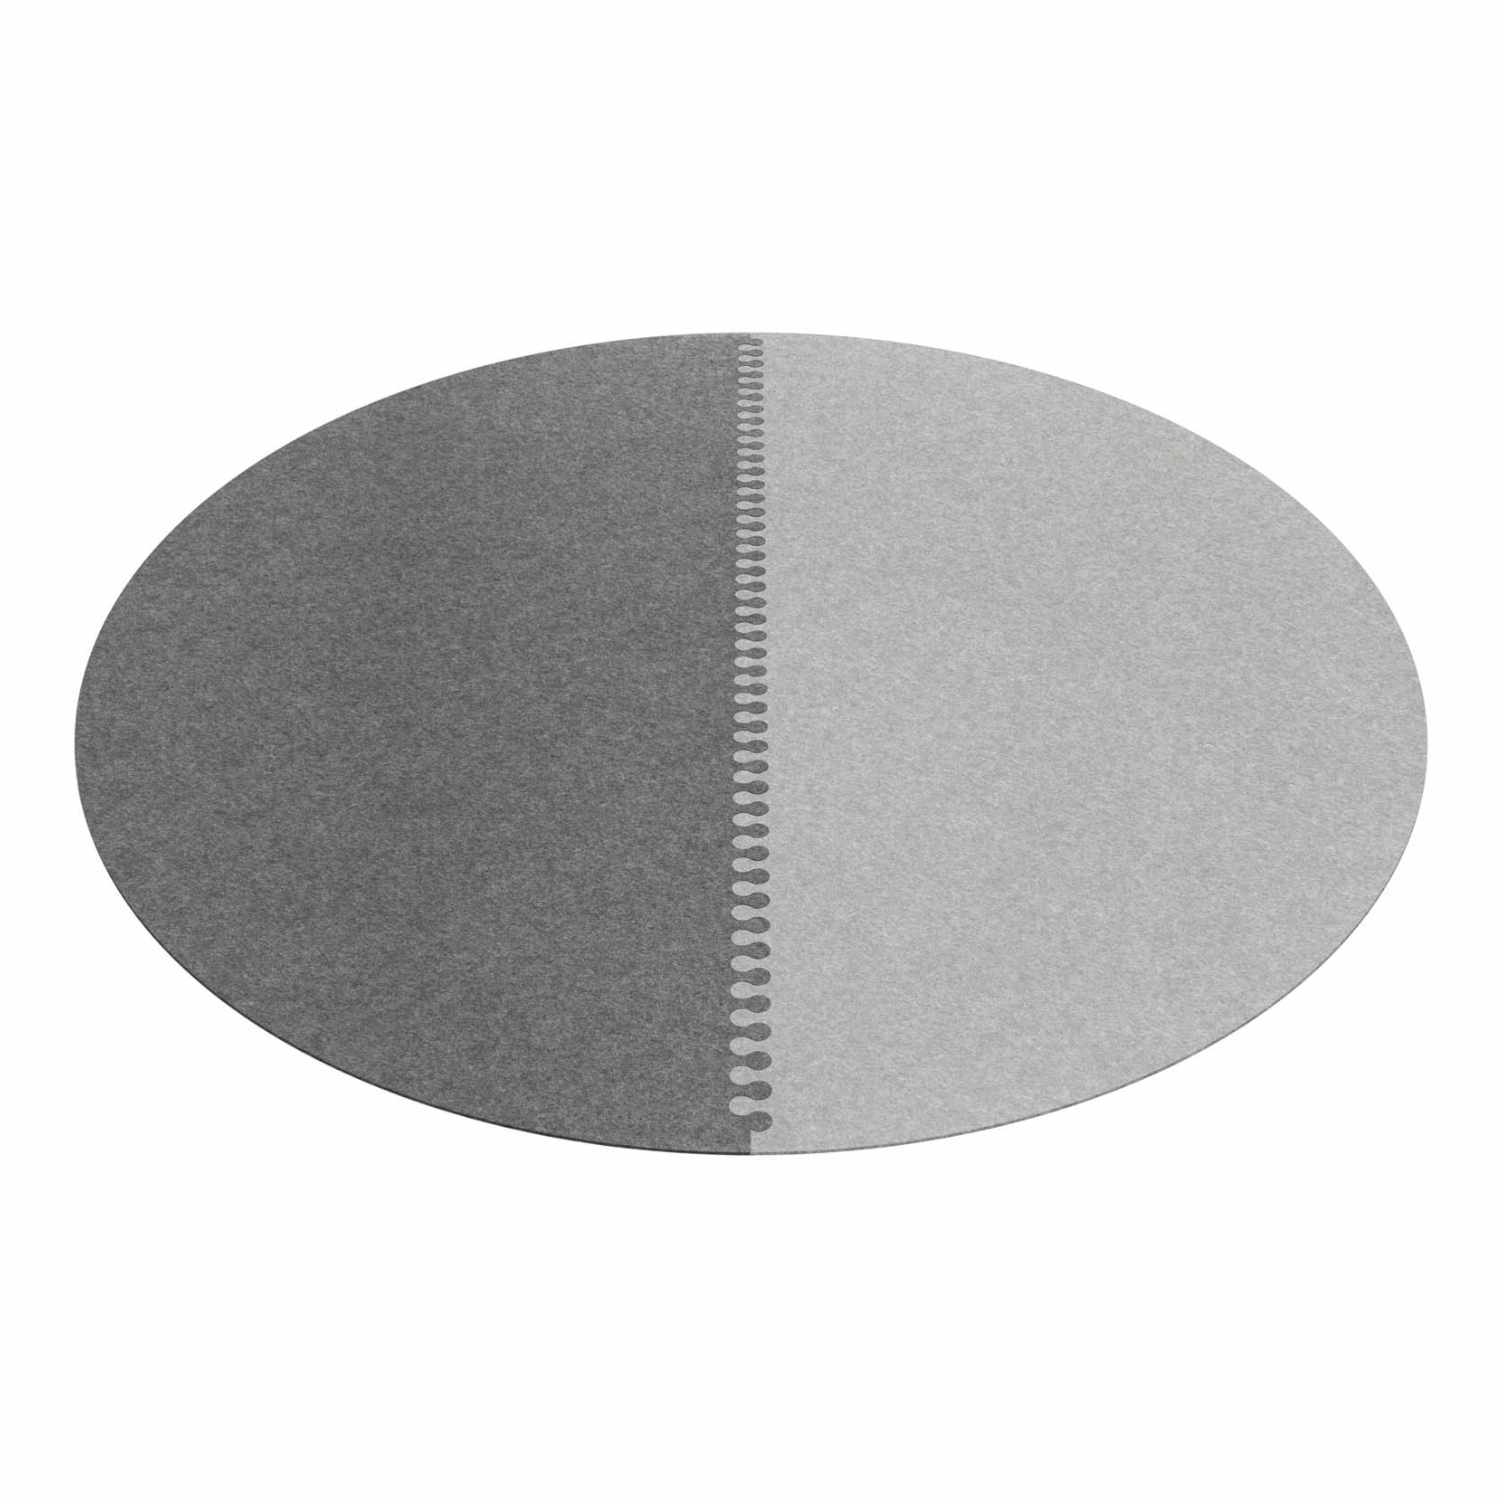 Zipp rund 2-teilig Teppich, Farbe anthrazit, Farbe 2 graphit 08, Durchmesser 360 cm von HEY-SIGN